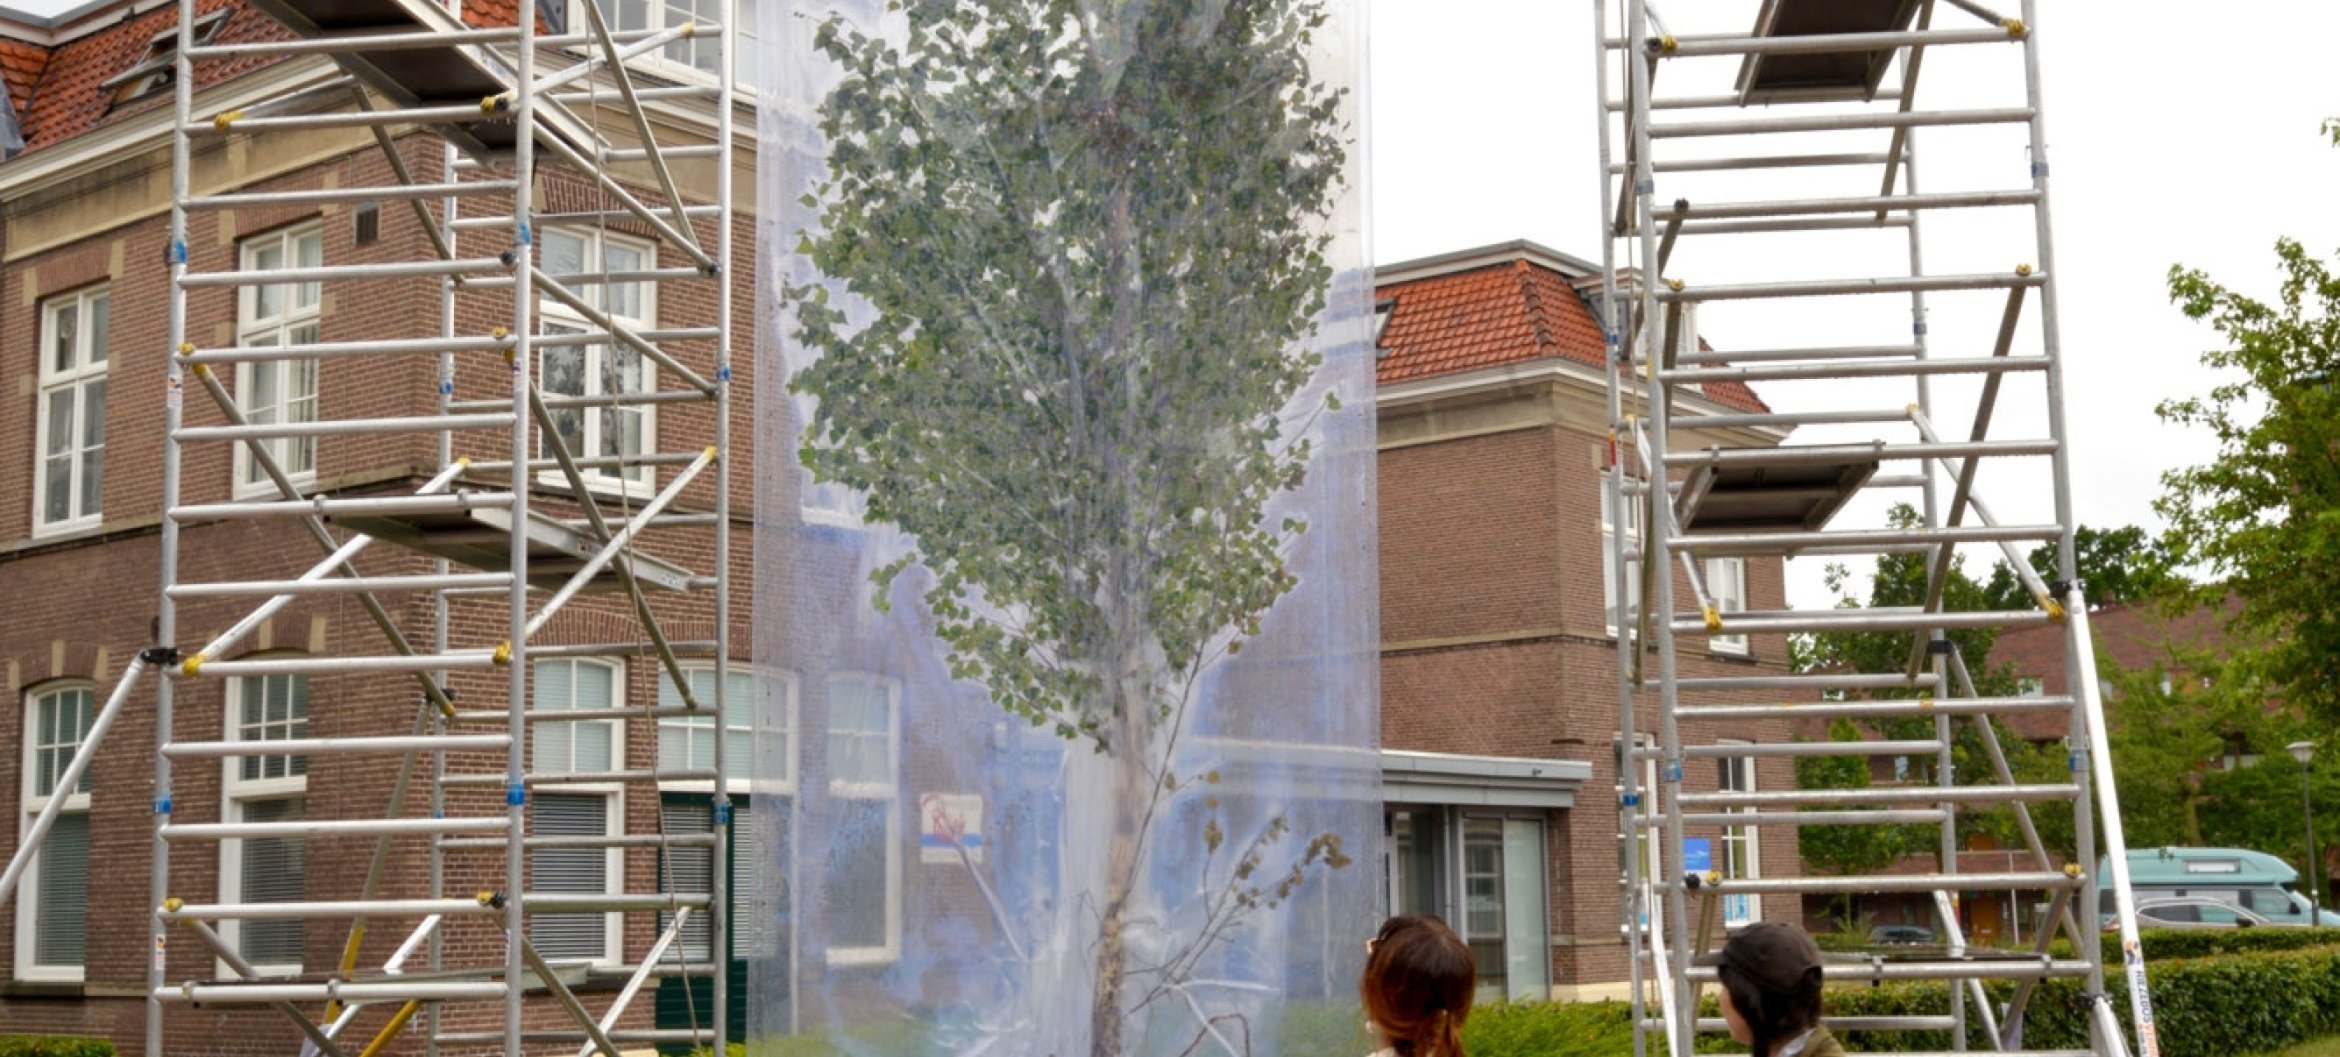 GESPOT: Metropolis M toont het bruuske werk van Max Werkman, waarin hij vragen wil oproepen over ecologie en menselijke verantwoordelijkheid